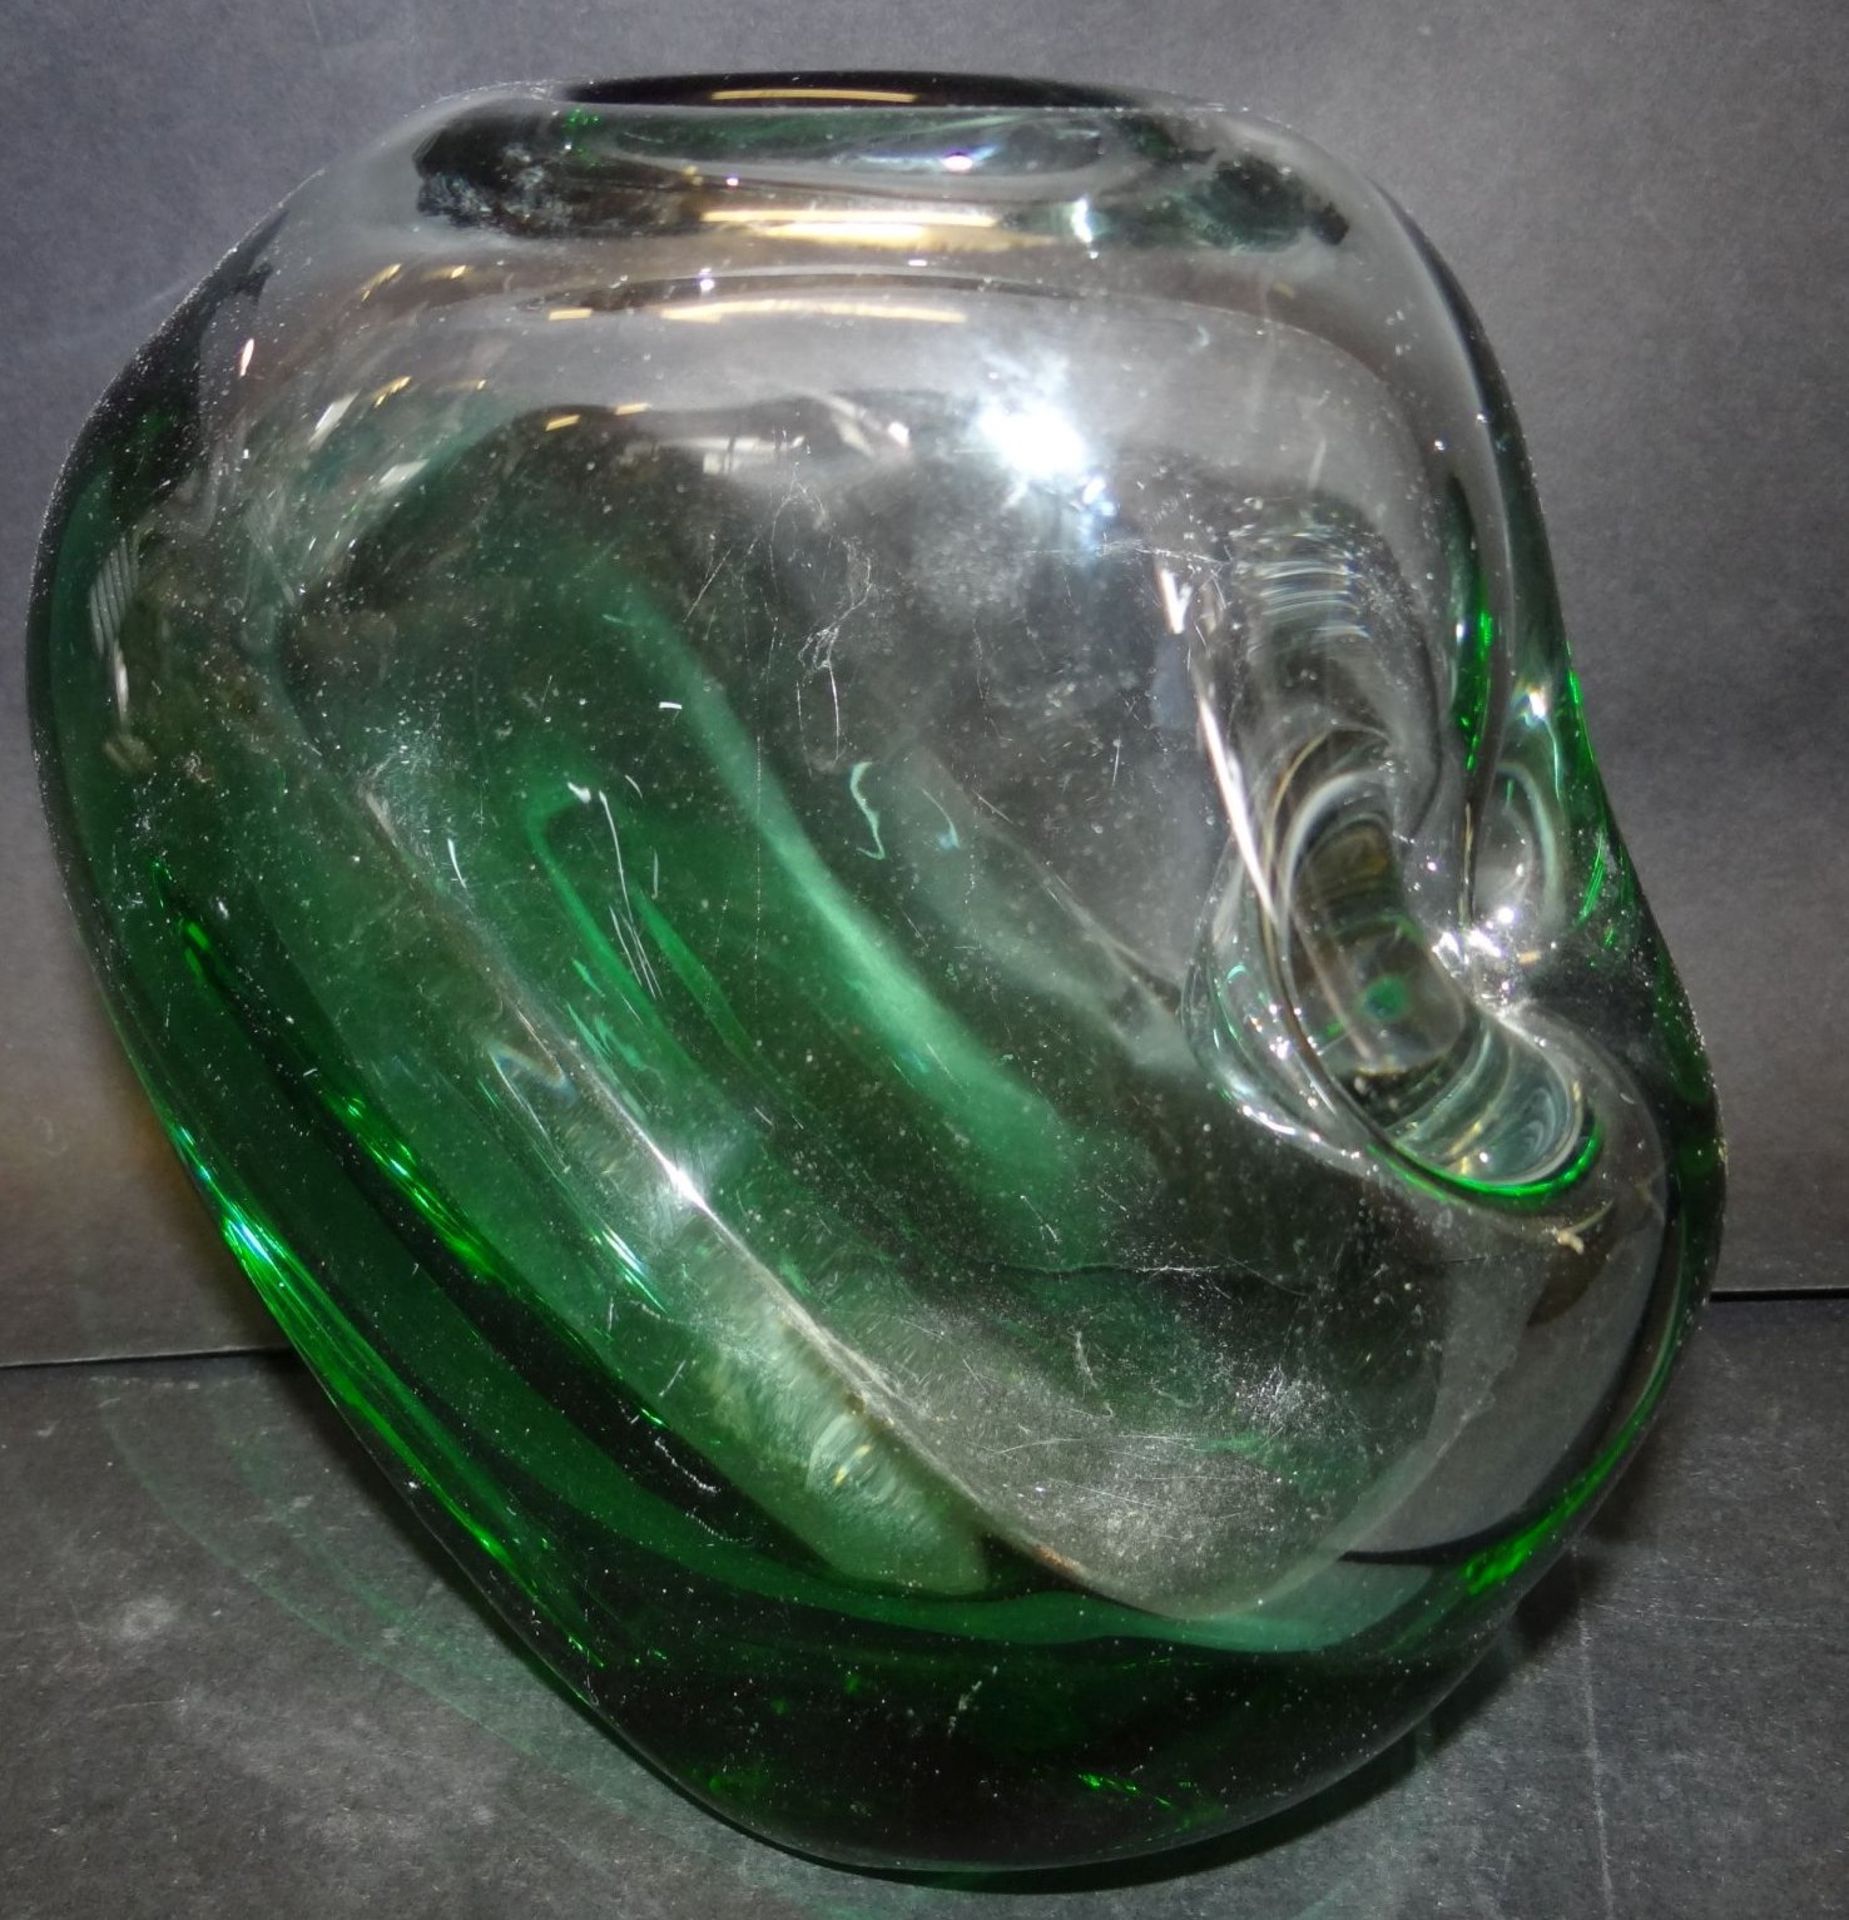 grosse, schwere Kunstglas-Vase, grün/weiss, 17x17 c - Image 2 of 4